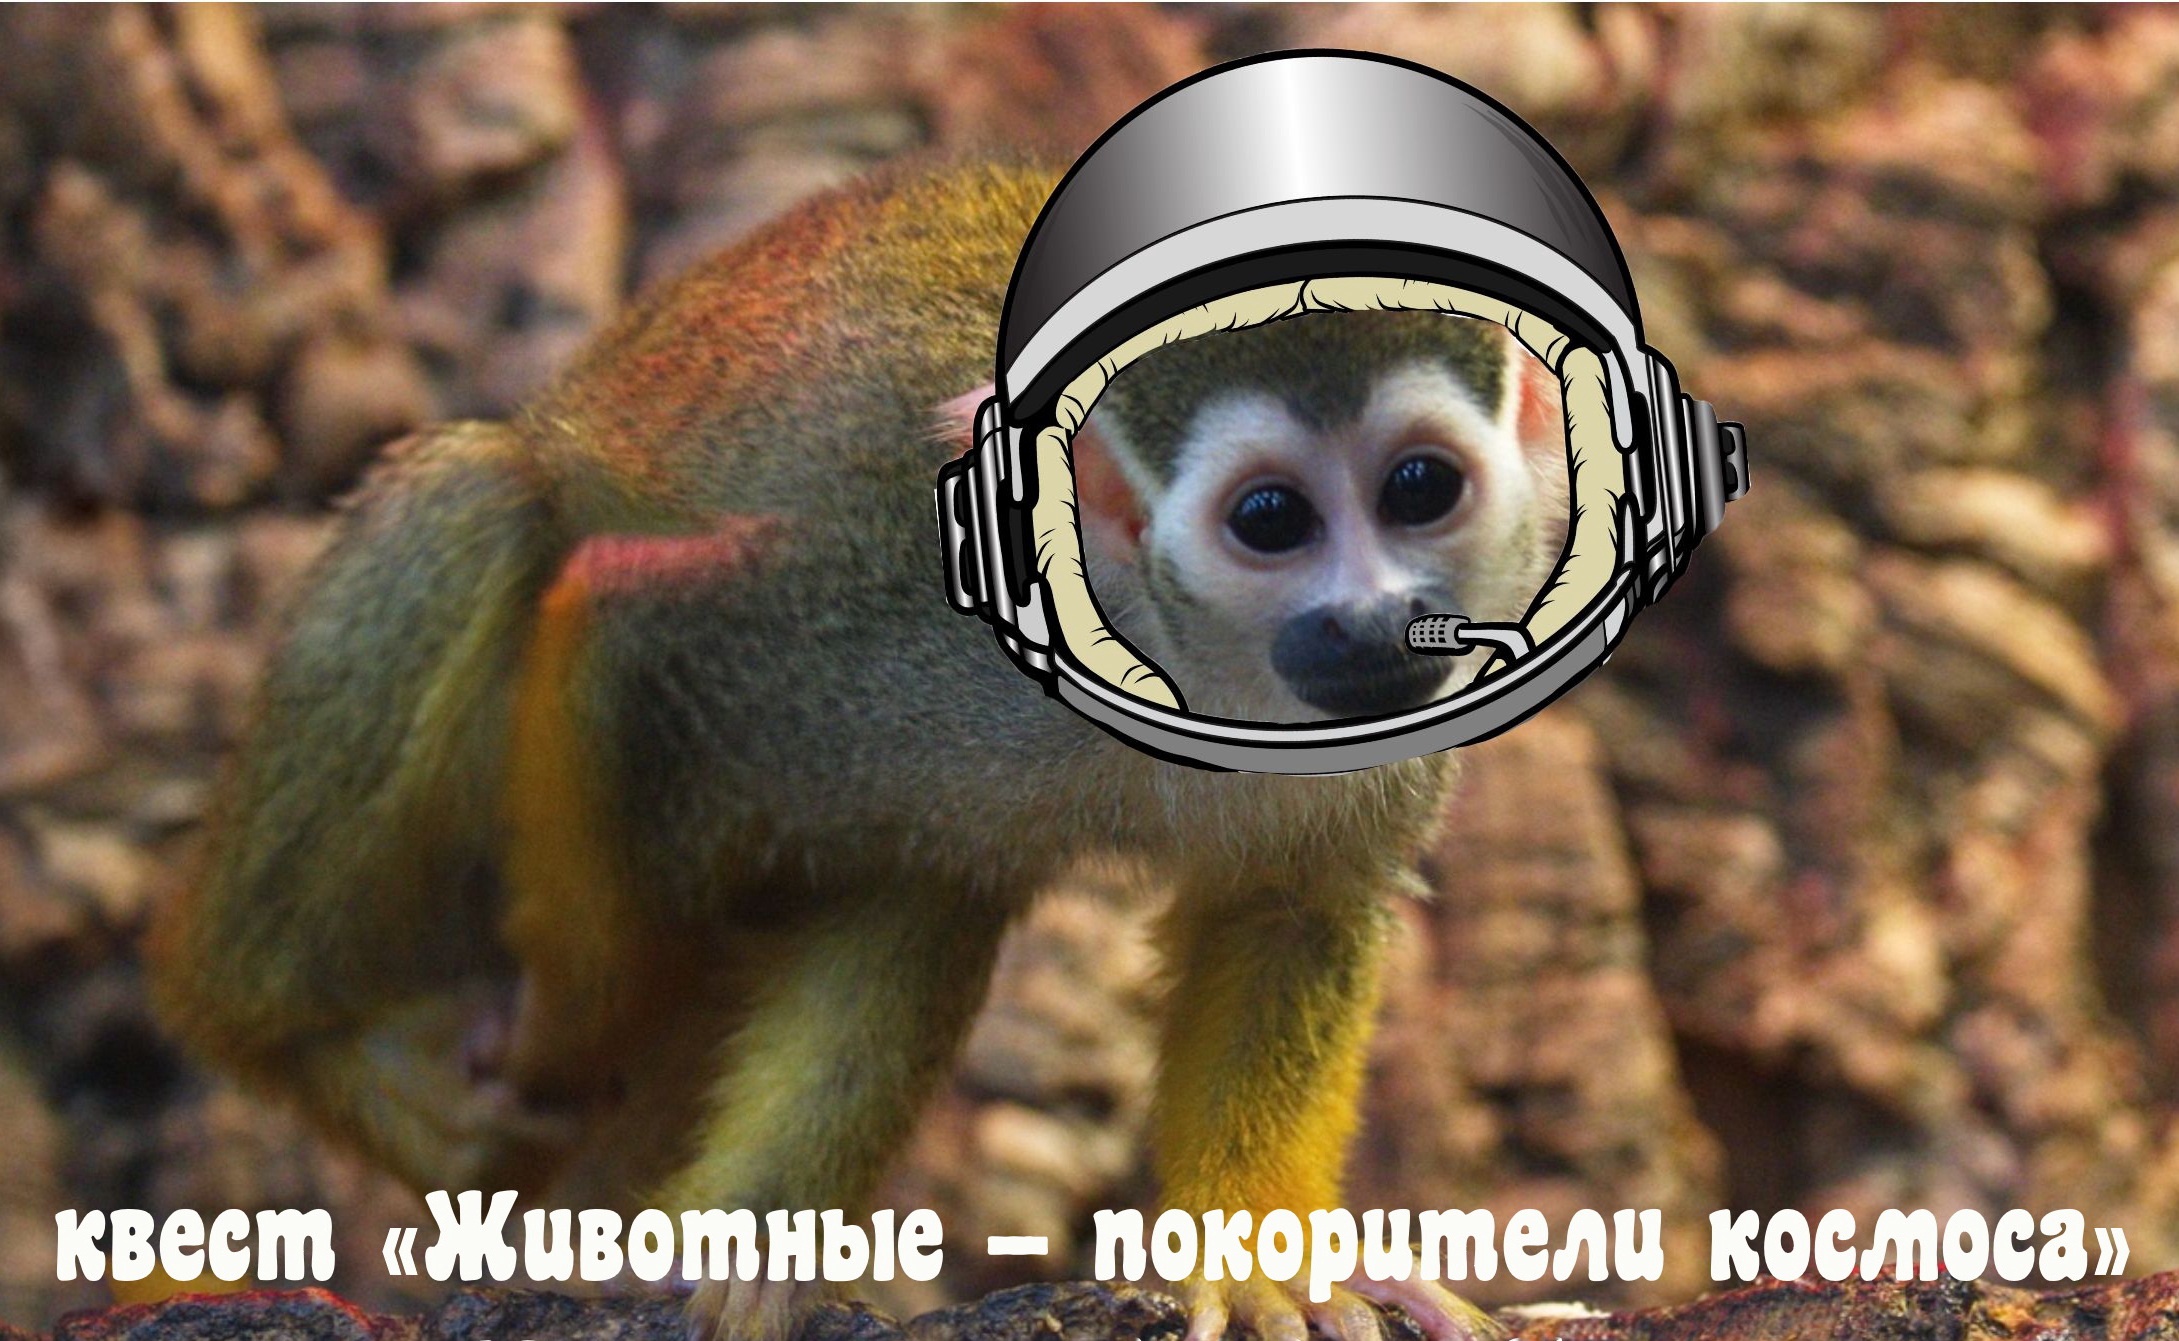 В Самарском зоопарке расскажут про животных - покорителей космоса